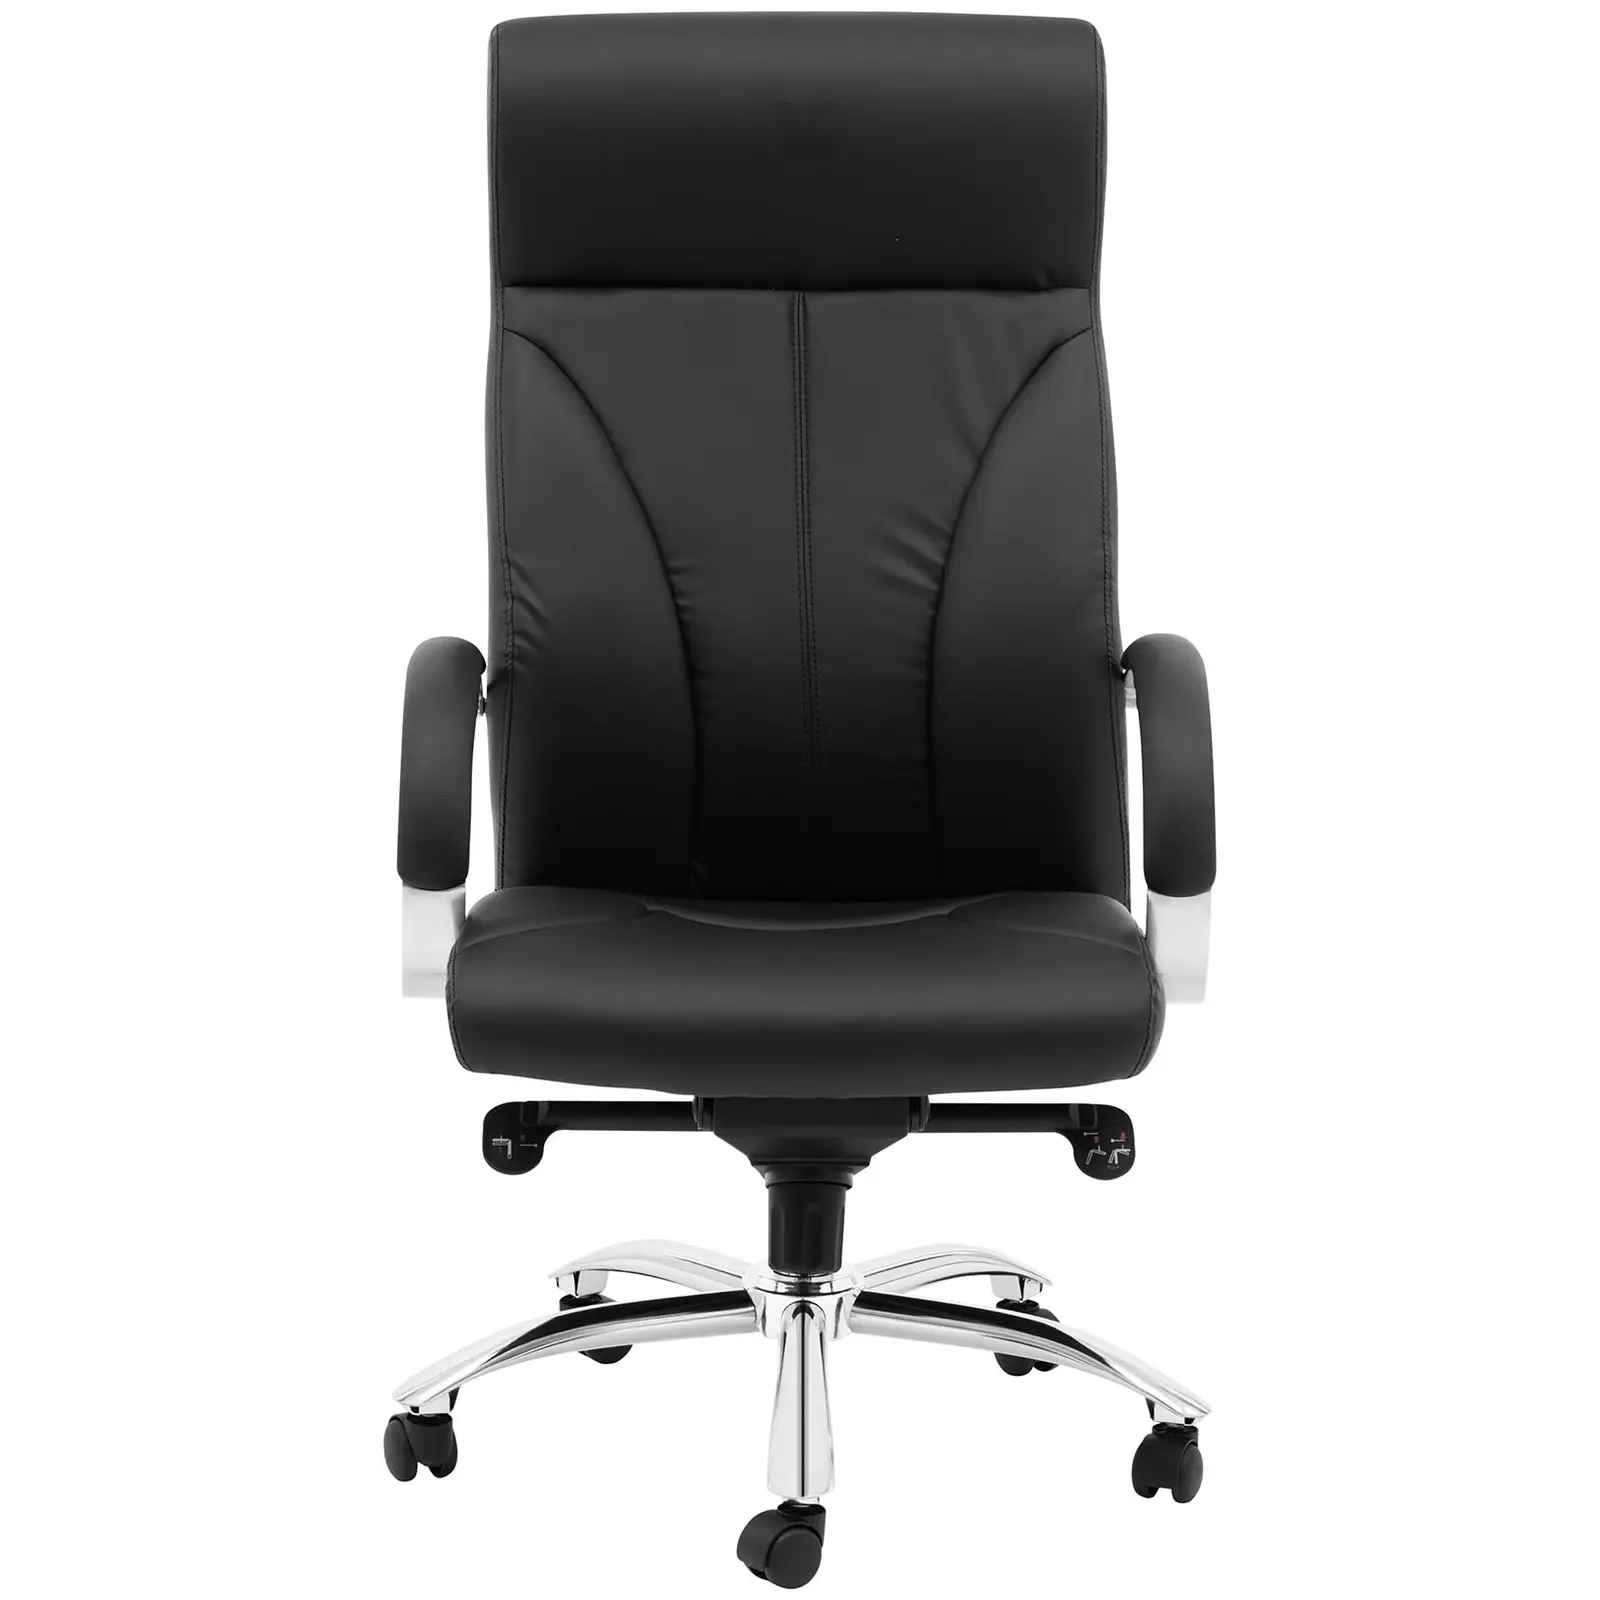 Chaise de bureau - Dossier en cuir synthétique - Coloris noir - 100 kg